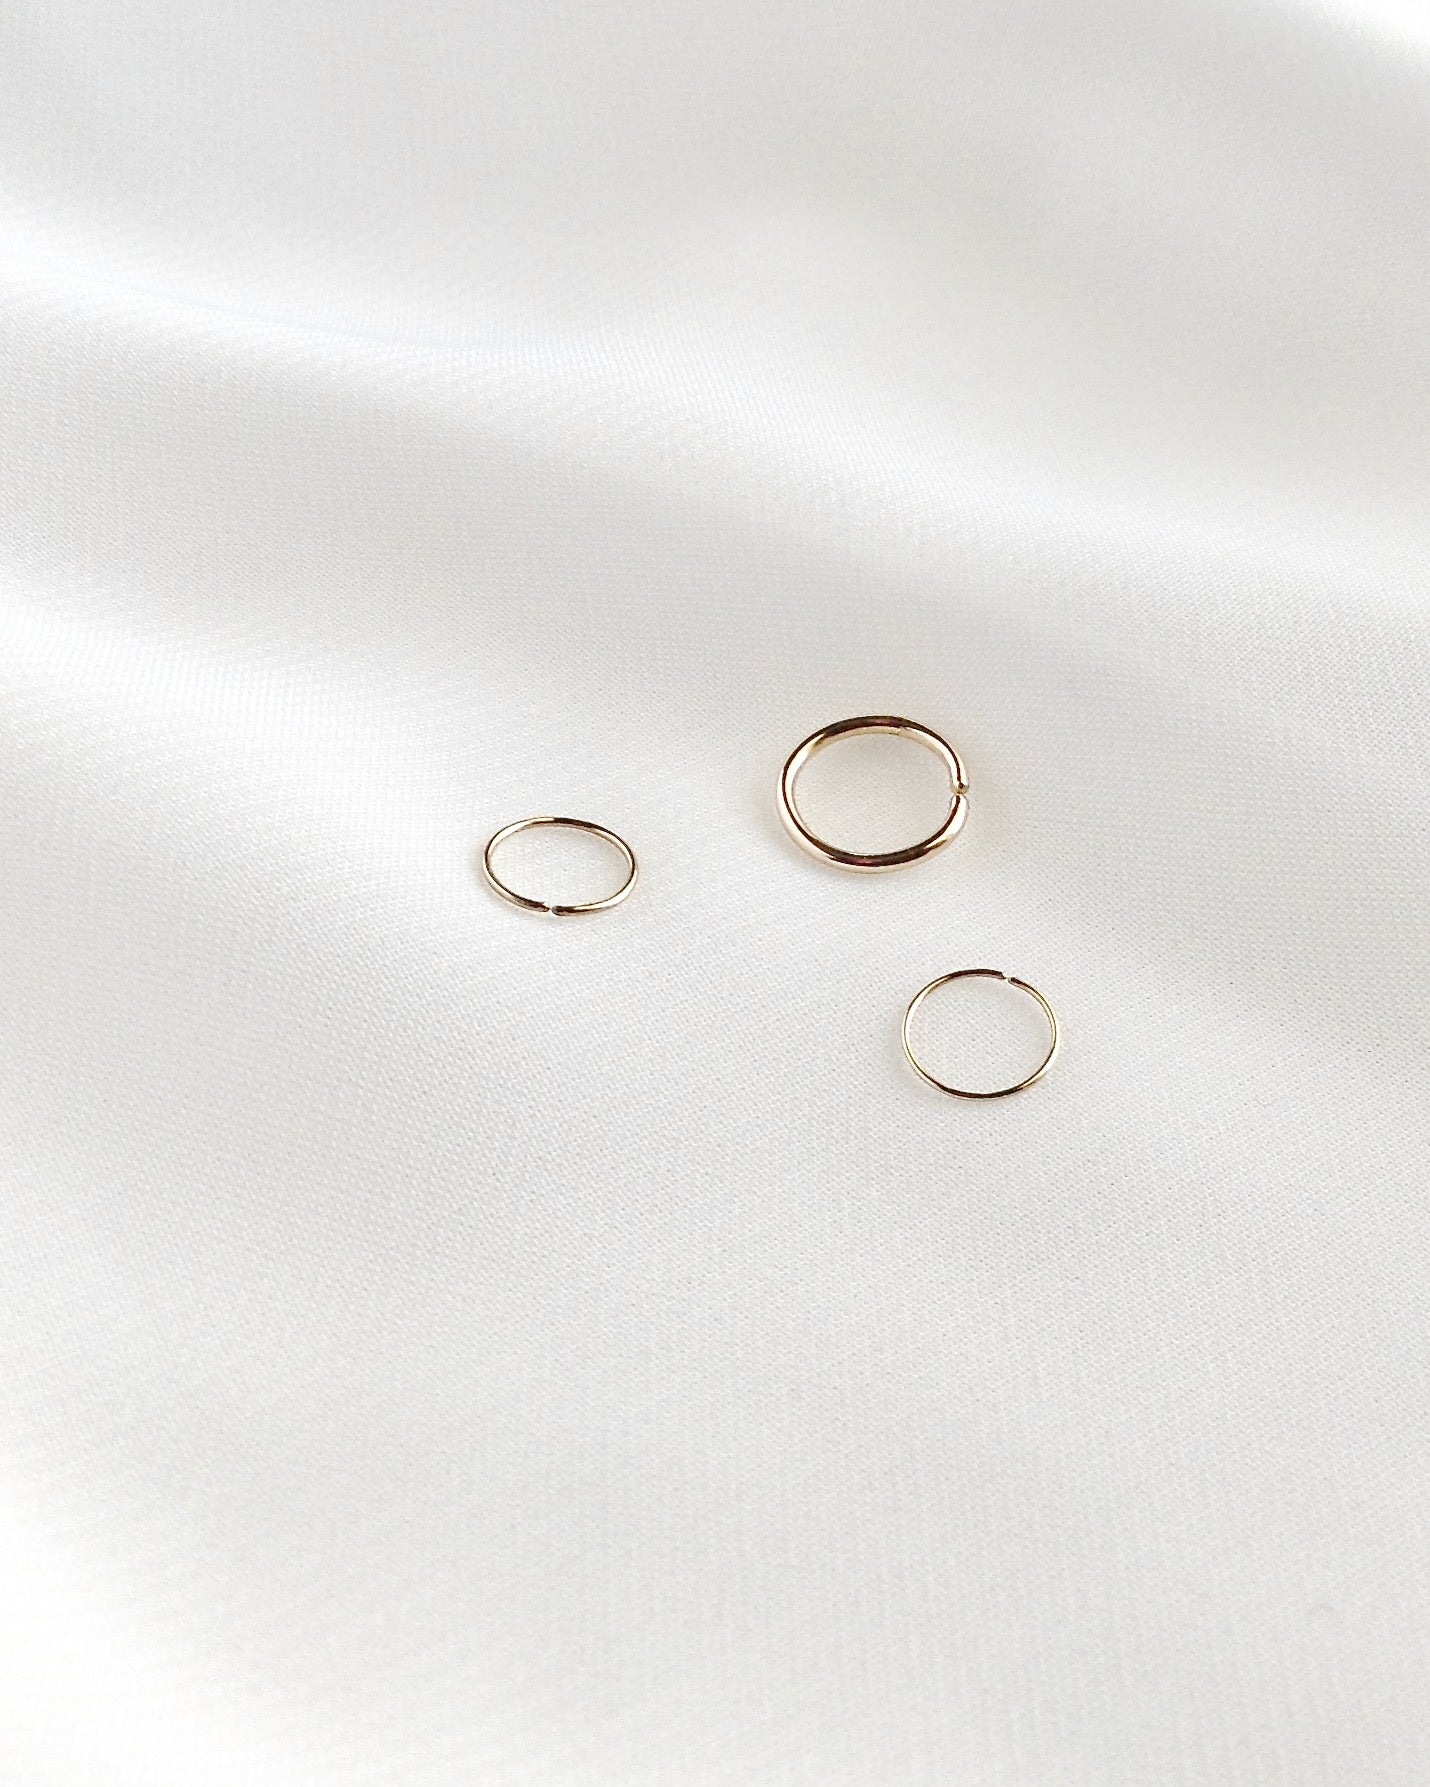 Small Gold Filled Carilage Hoop | Gold Helix Hoop Earrings | Cartilage Piercing Hoop | Simple Daith or Rook Hoop | IB Jewelry